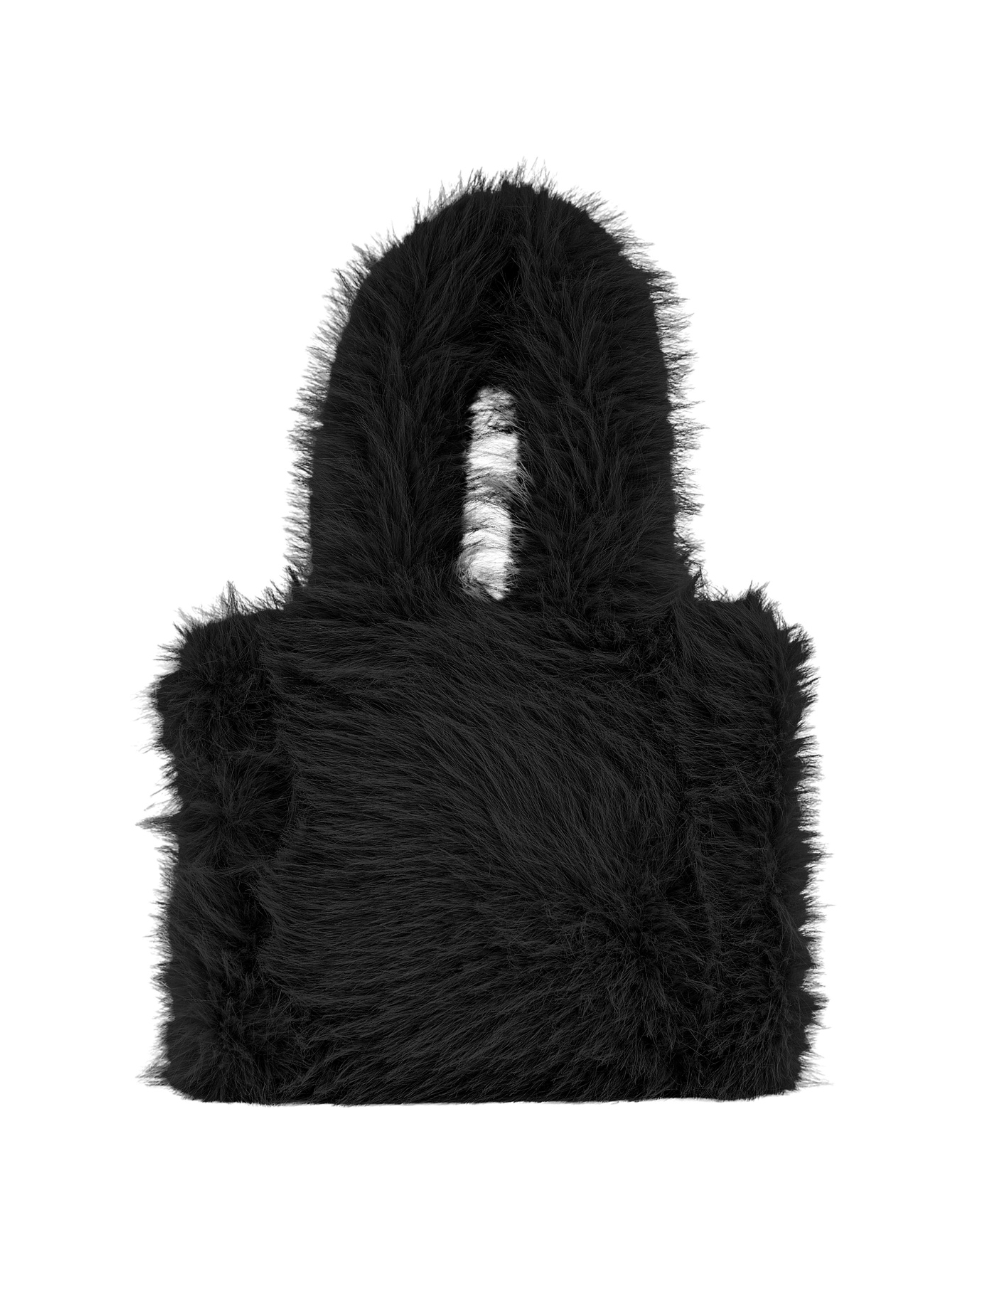 Mini vegan fur tote made in canada fabric end off cut accessories ink black